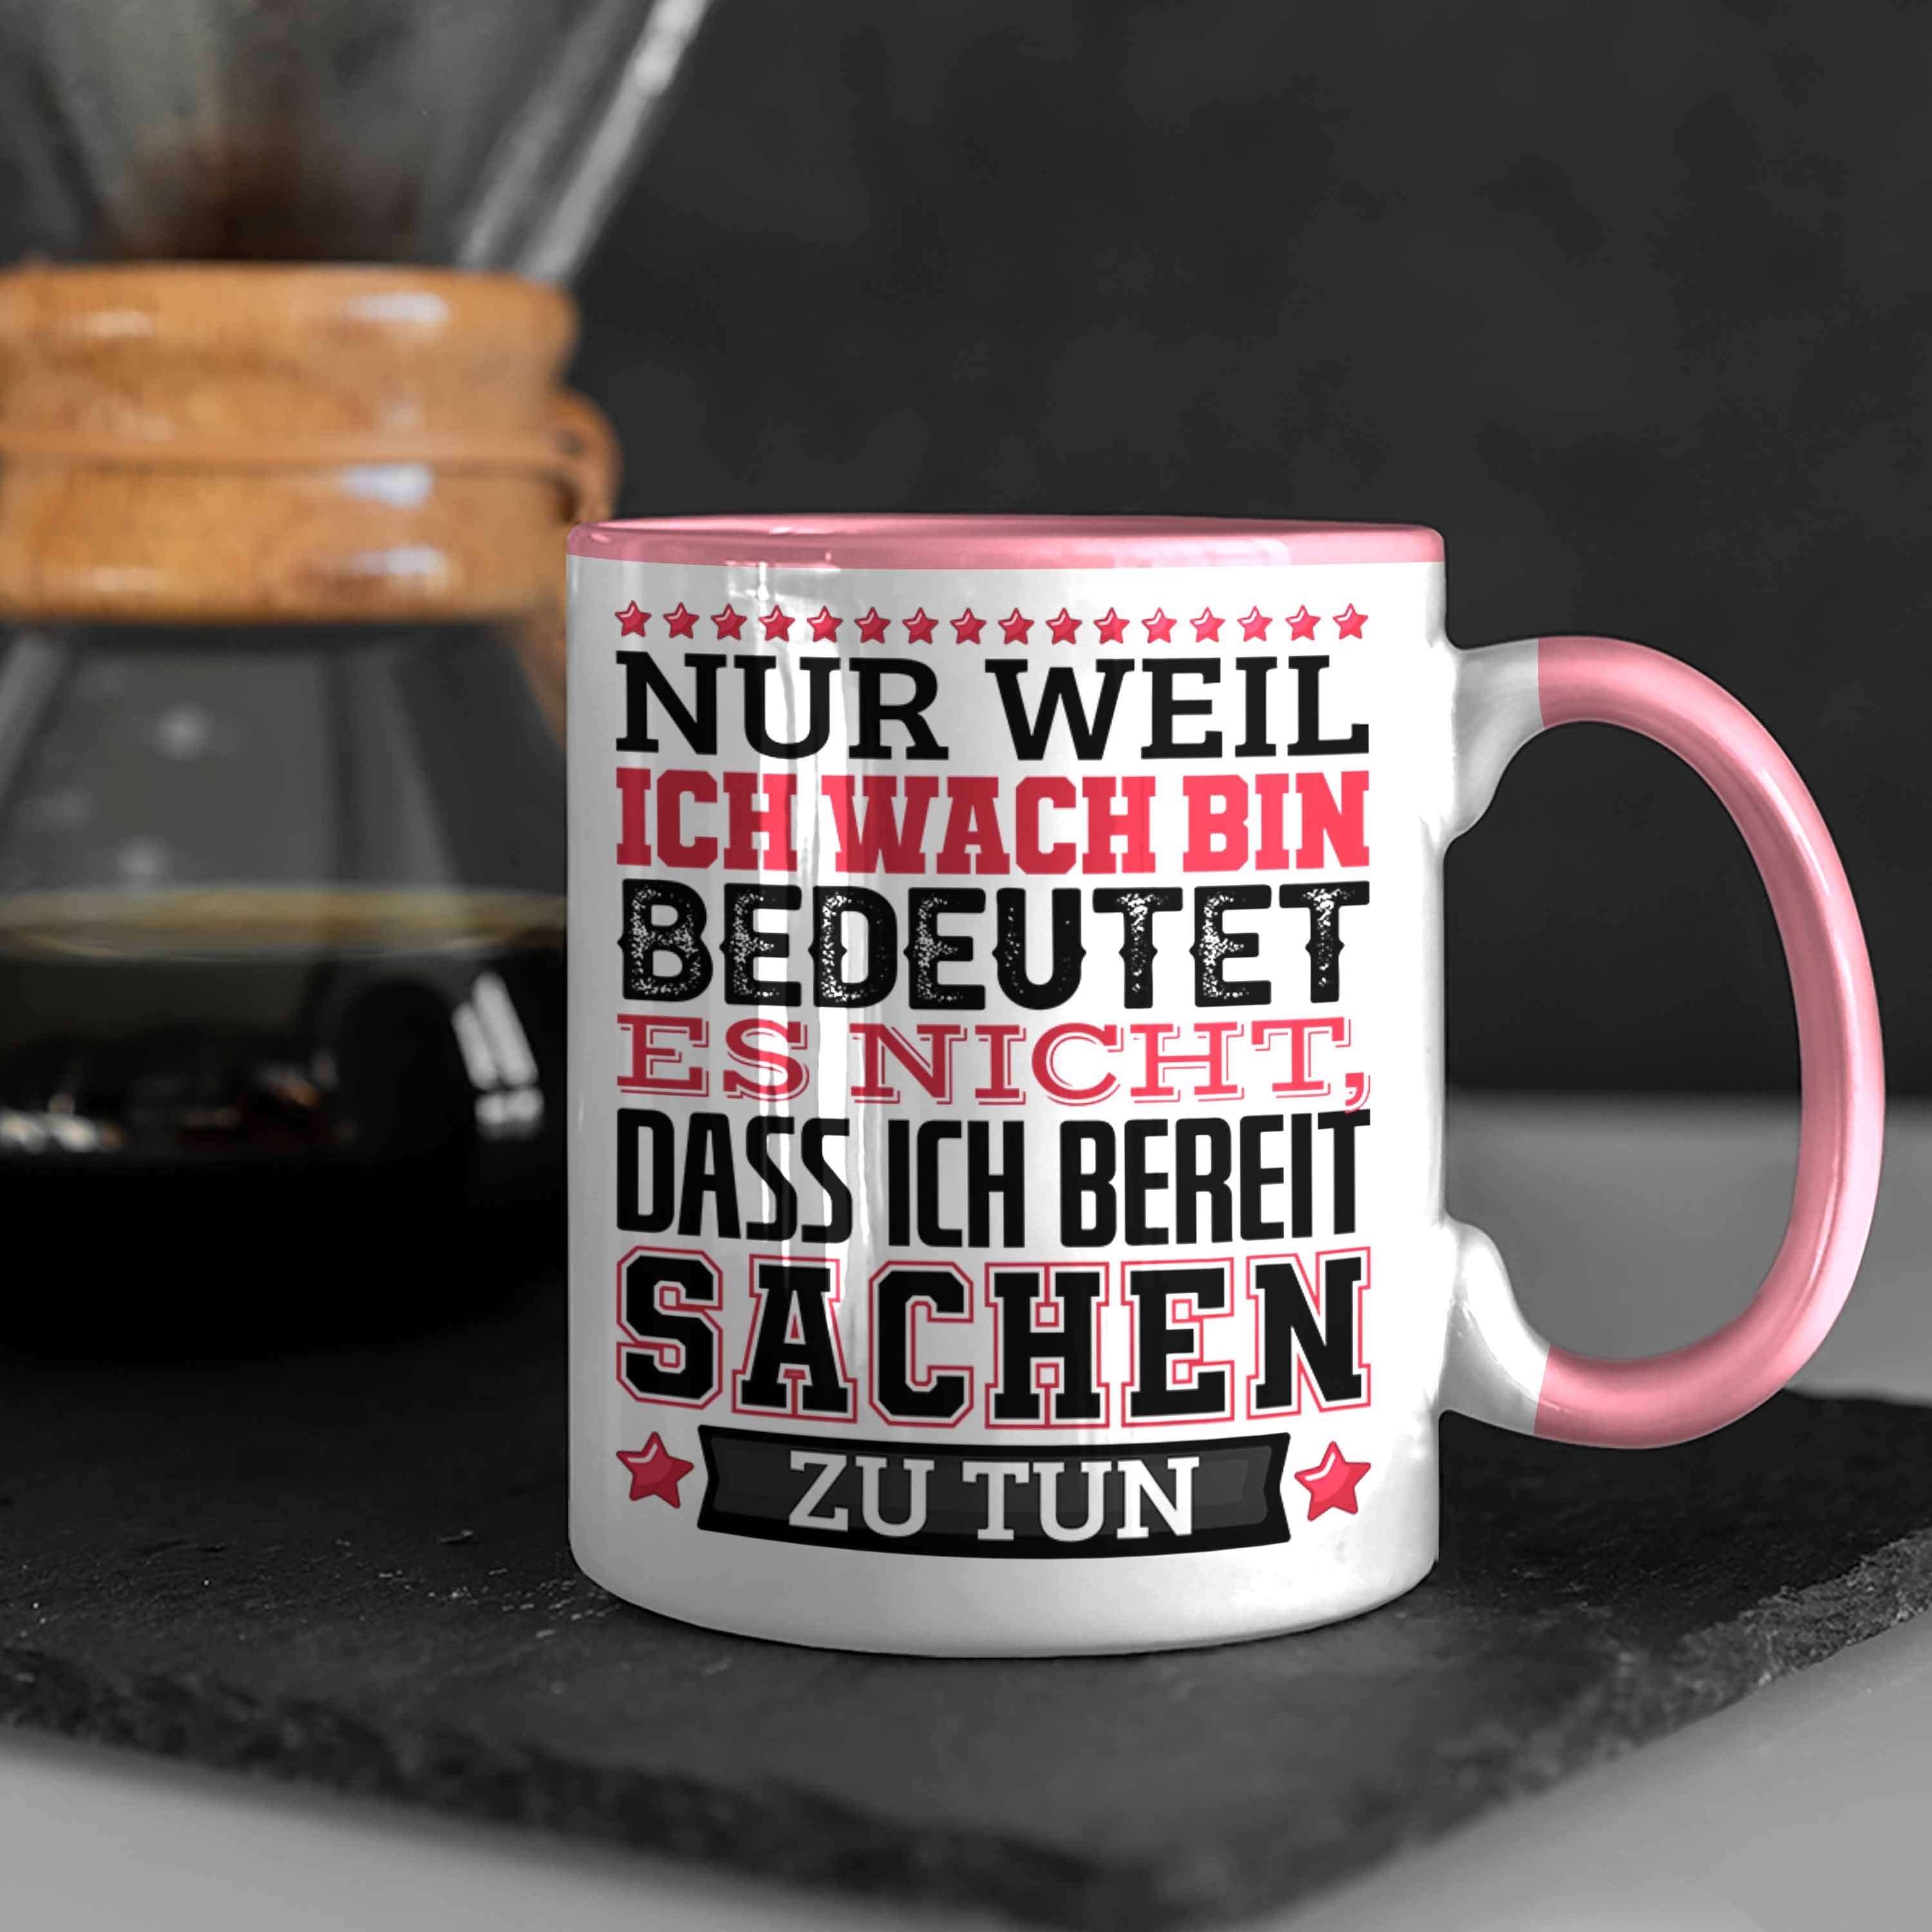 Trendation Tasse Heißt Lustiger Es Weil Tasse Nic Bin Ich Nur Spruch Wach Kaffee-Becher Rosa